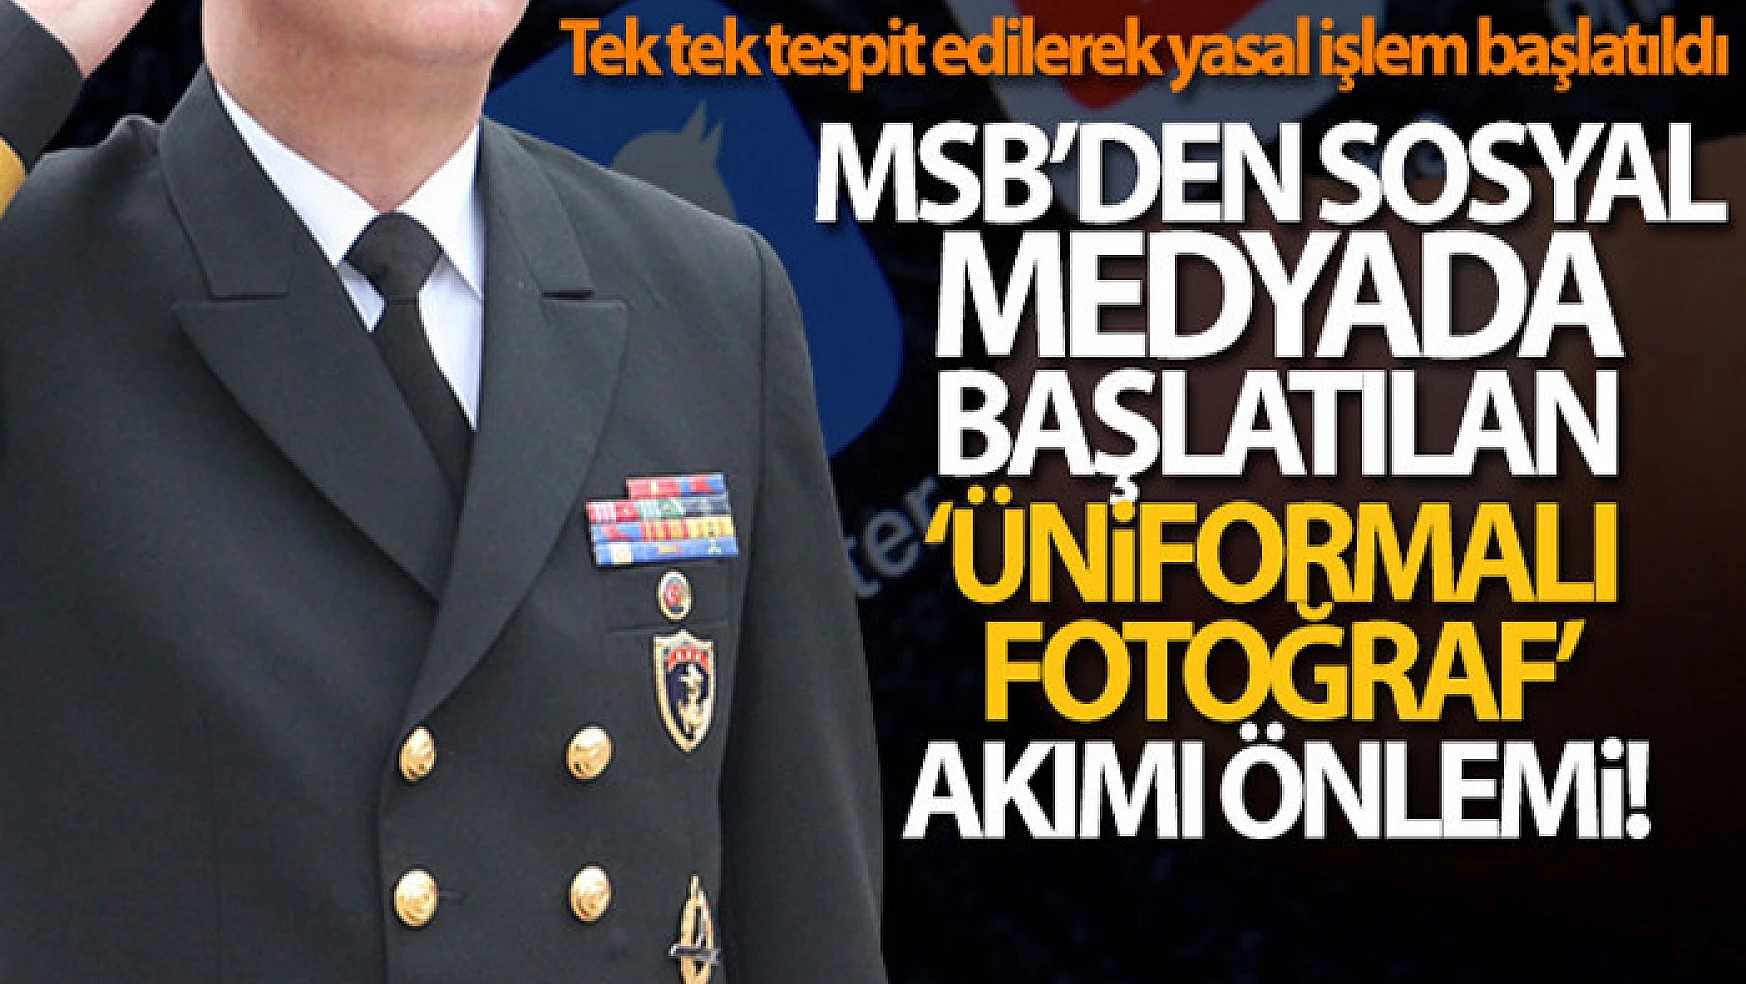 MSB'den sosyal medyada başlatılan 'üniformalı fotoğraf' akımı önlemi